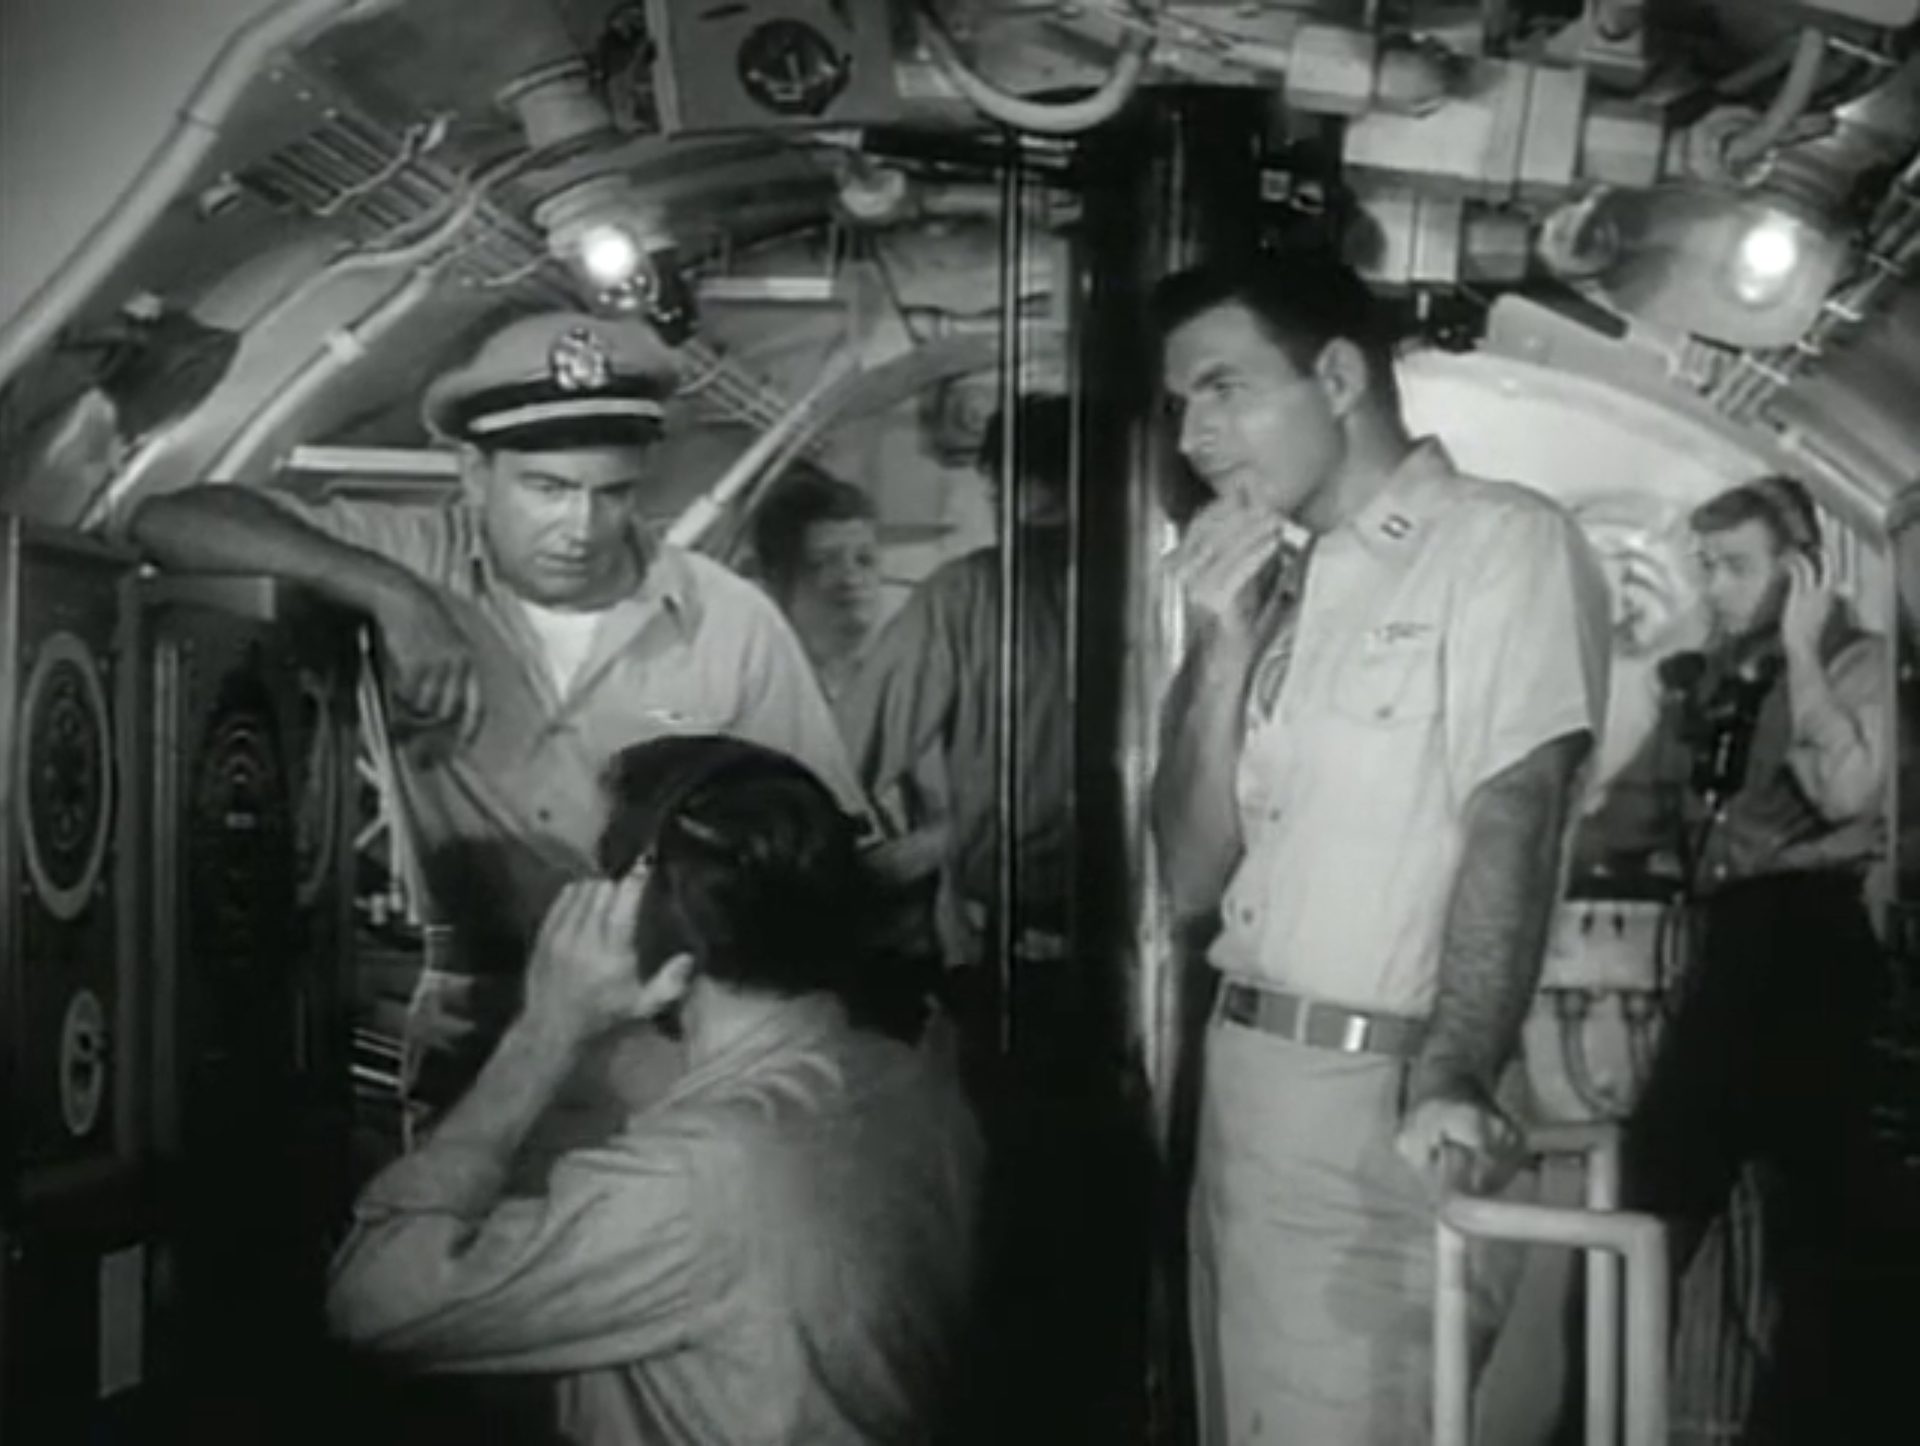 Schwarz-Weiß-Aufnahme in der Kommandozentrale eines Navy-U-Bootes; der Kapitän lehnt an einem Gerät und blickt zum davor sitzenden Seemann herab, der Kopfhörer trägt; in der Mitte steht ein Offizier in nachdenklicher Pose neben dem Periskop, im Hintergrund weitere Seeleute.